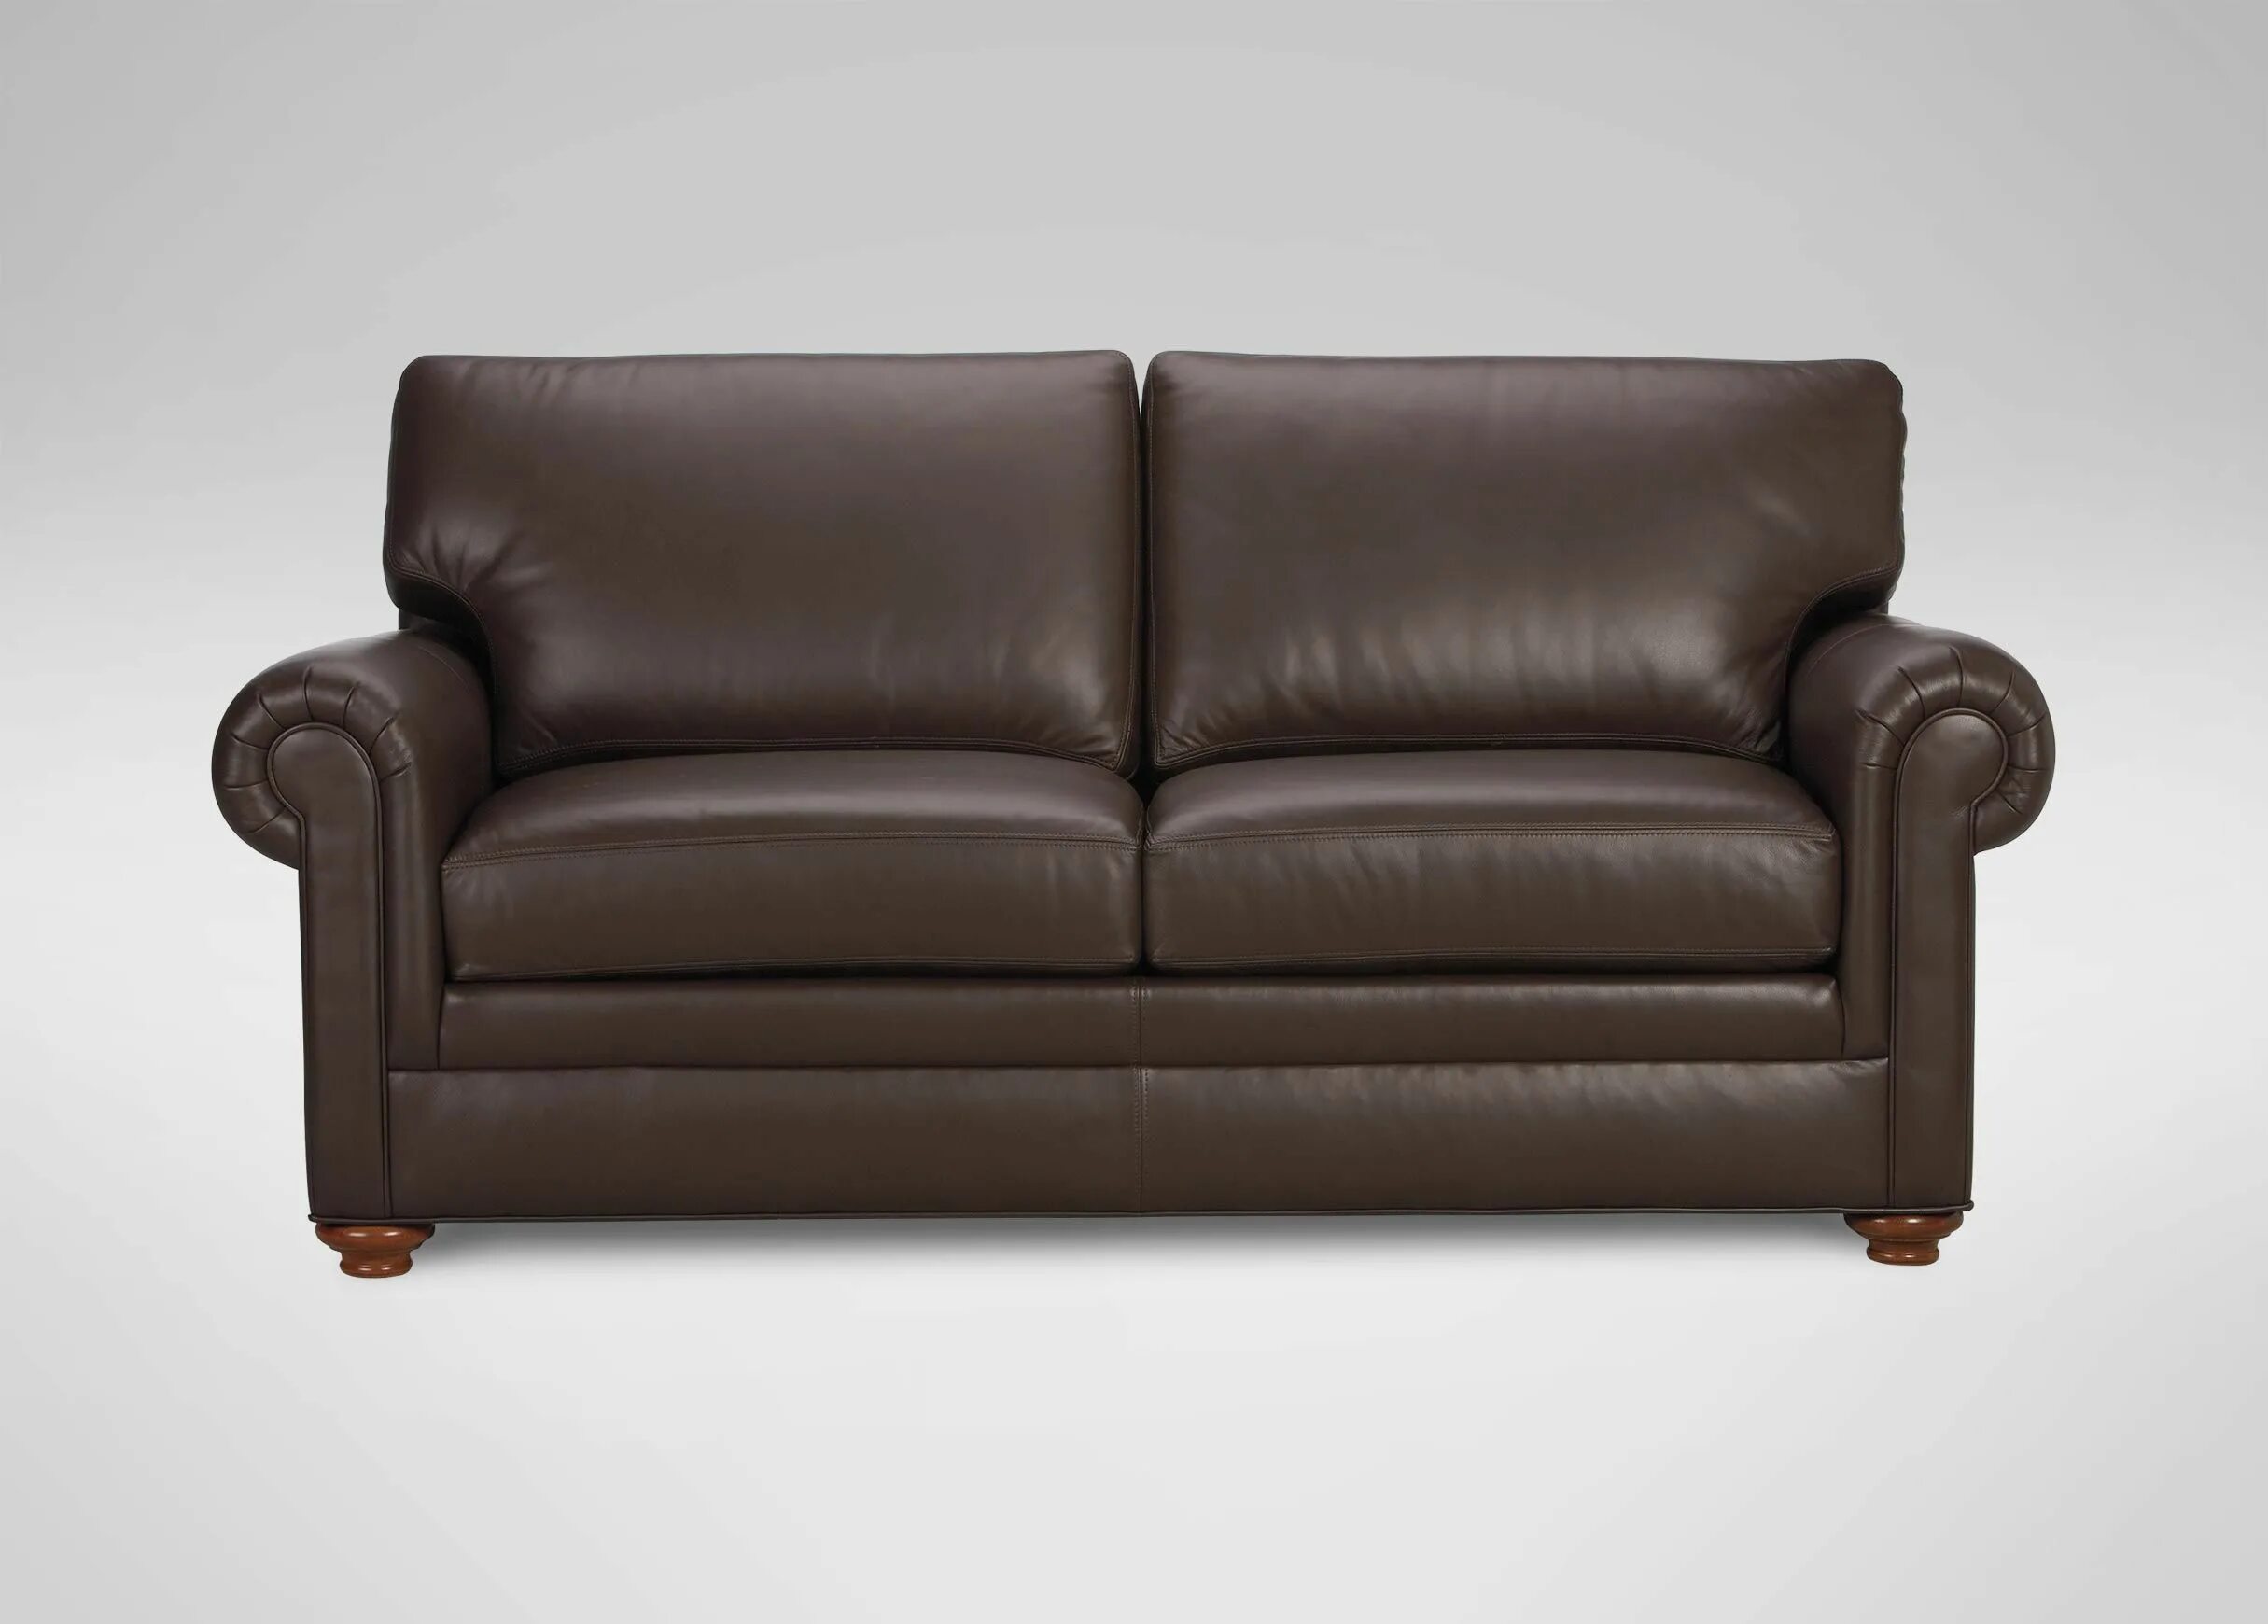 Спинка кожаного дивана. Маленький кожаный диван. Кожаная мягкая мебель. Диван кожа коричневый. Маленький кожаный диванчик.